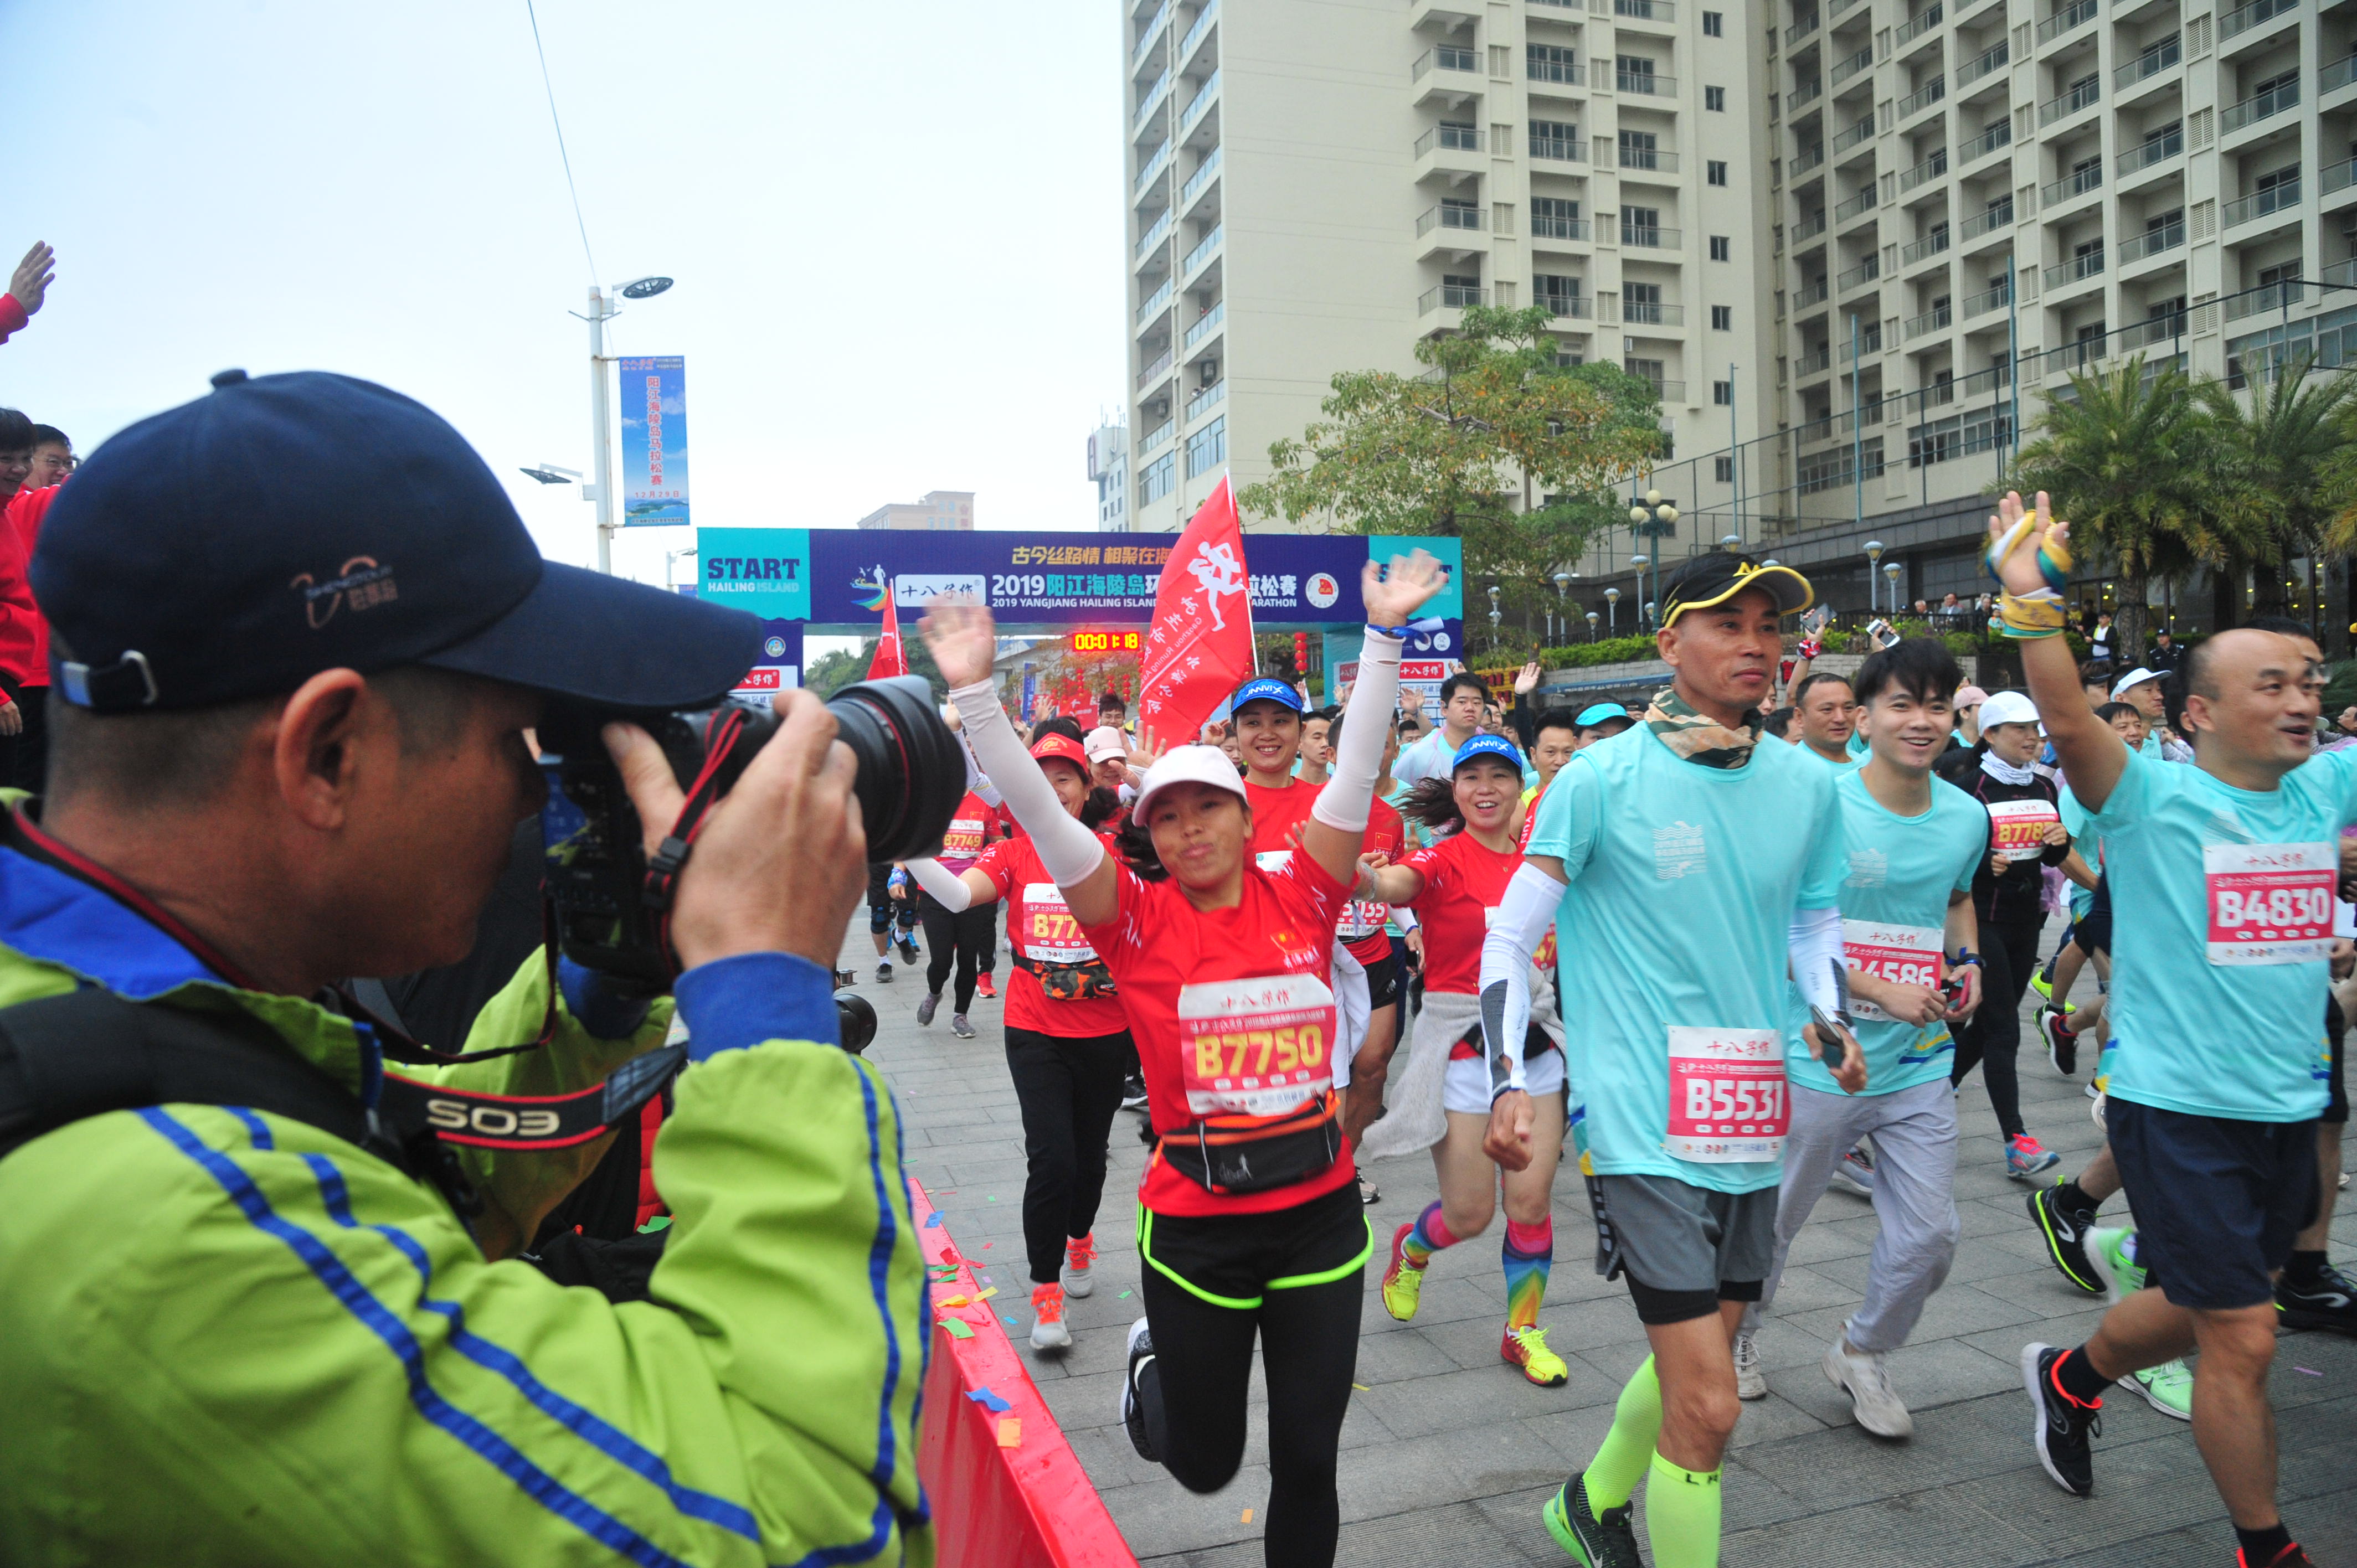 古今丝路情 相聚在海陵 十八子作2019阳江海陵岛环岛国际马拉松赛开跑